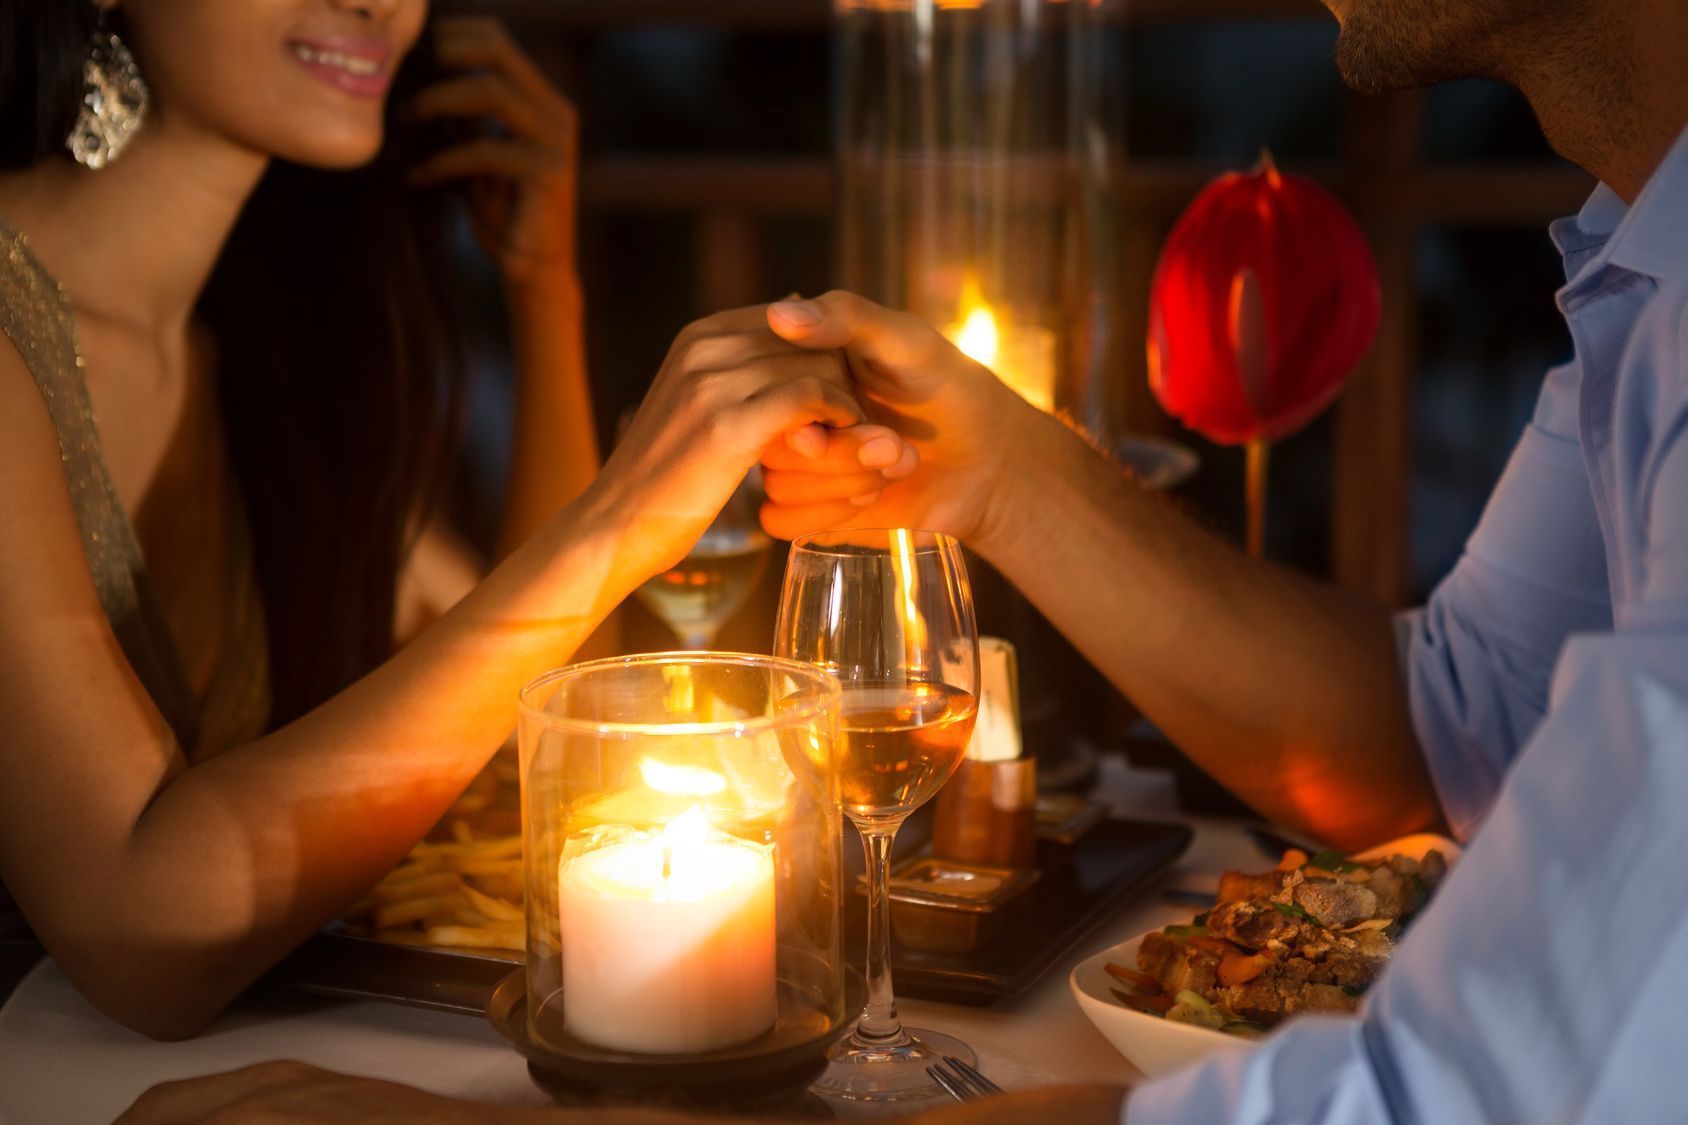 2016 fällt der Valentinstag auf einen Sonntag. Wollen Sie mit Ihrem Schatz essen gehen, denken Sie daran, vorzeitig einen Tisch zu reservieren – denn diese Idee haben sicher nicht nur Sie.